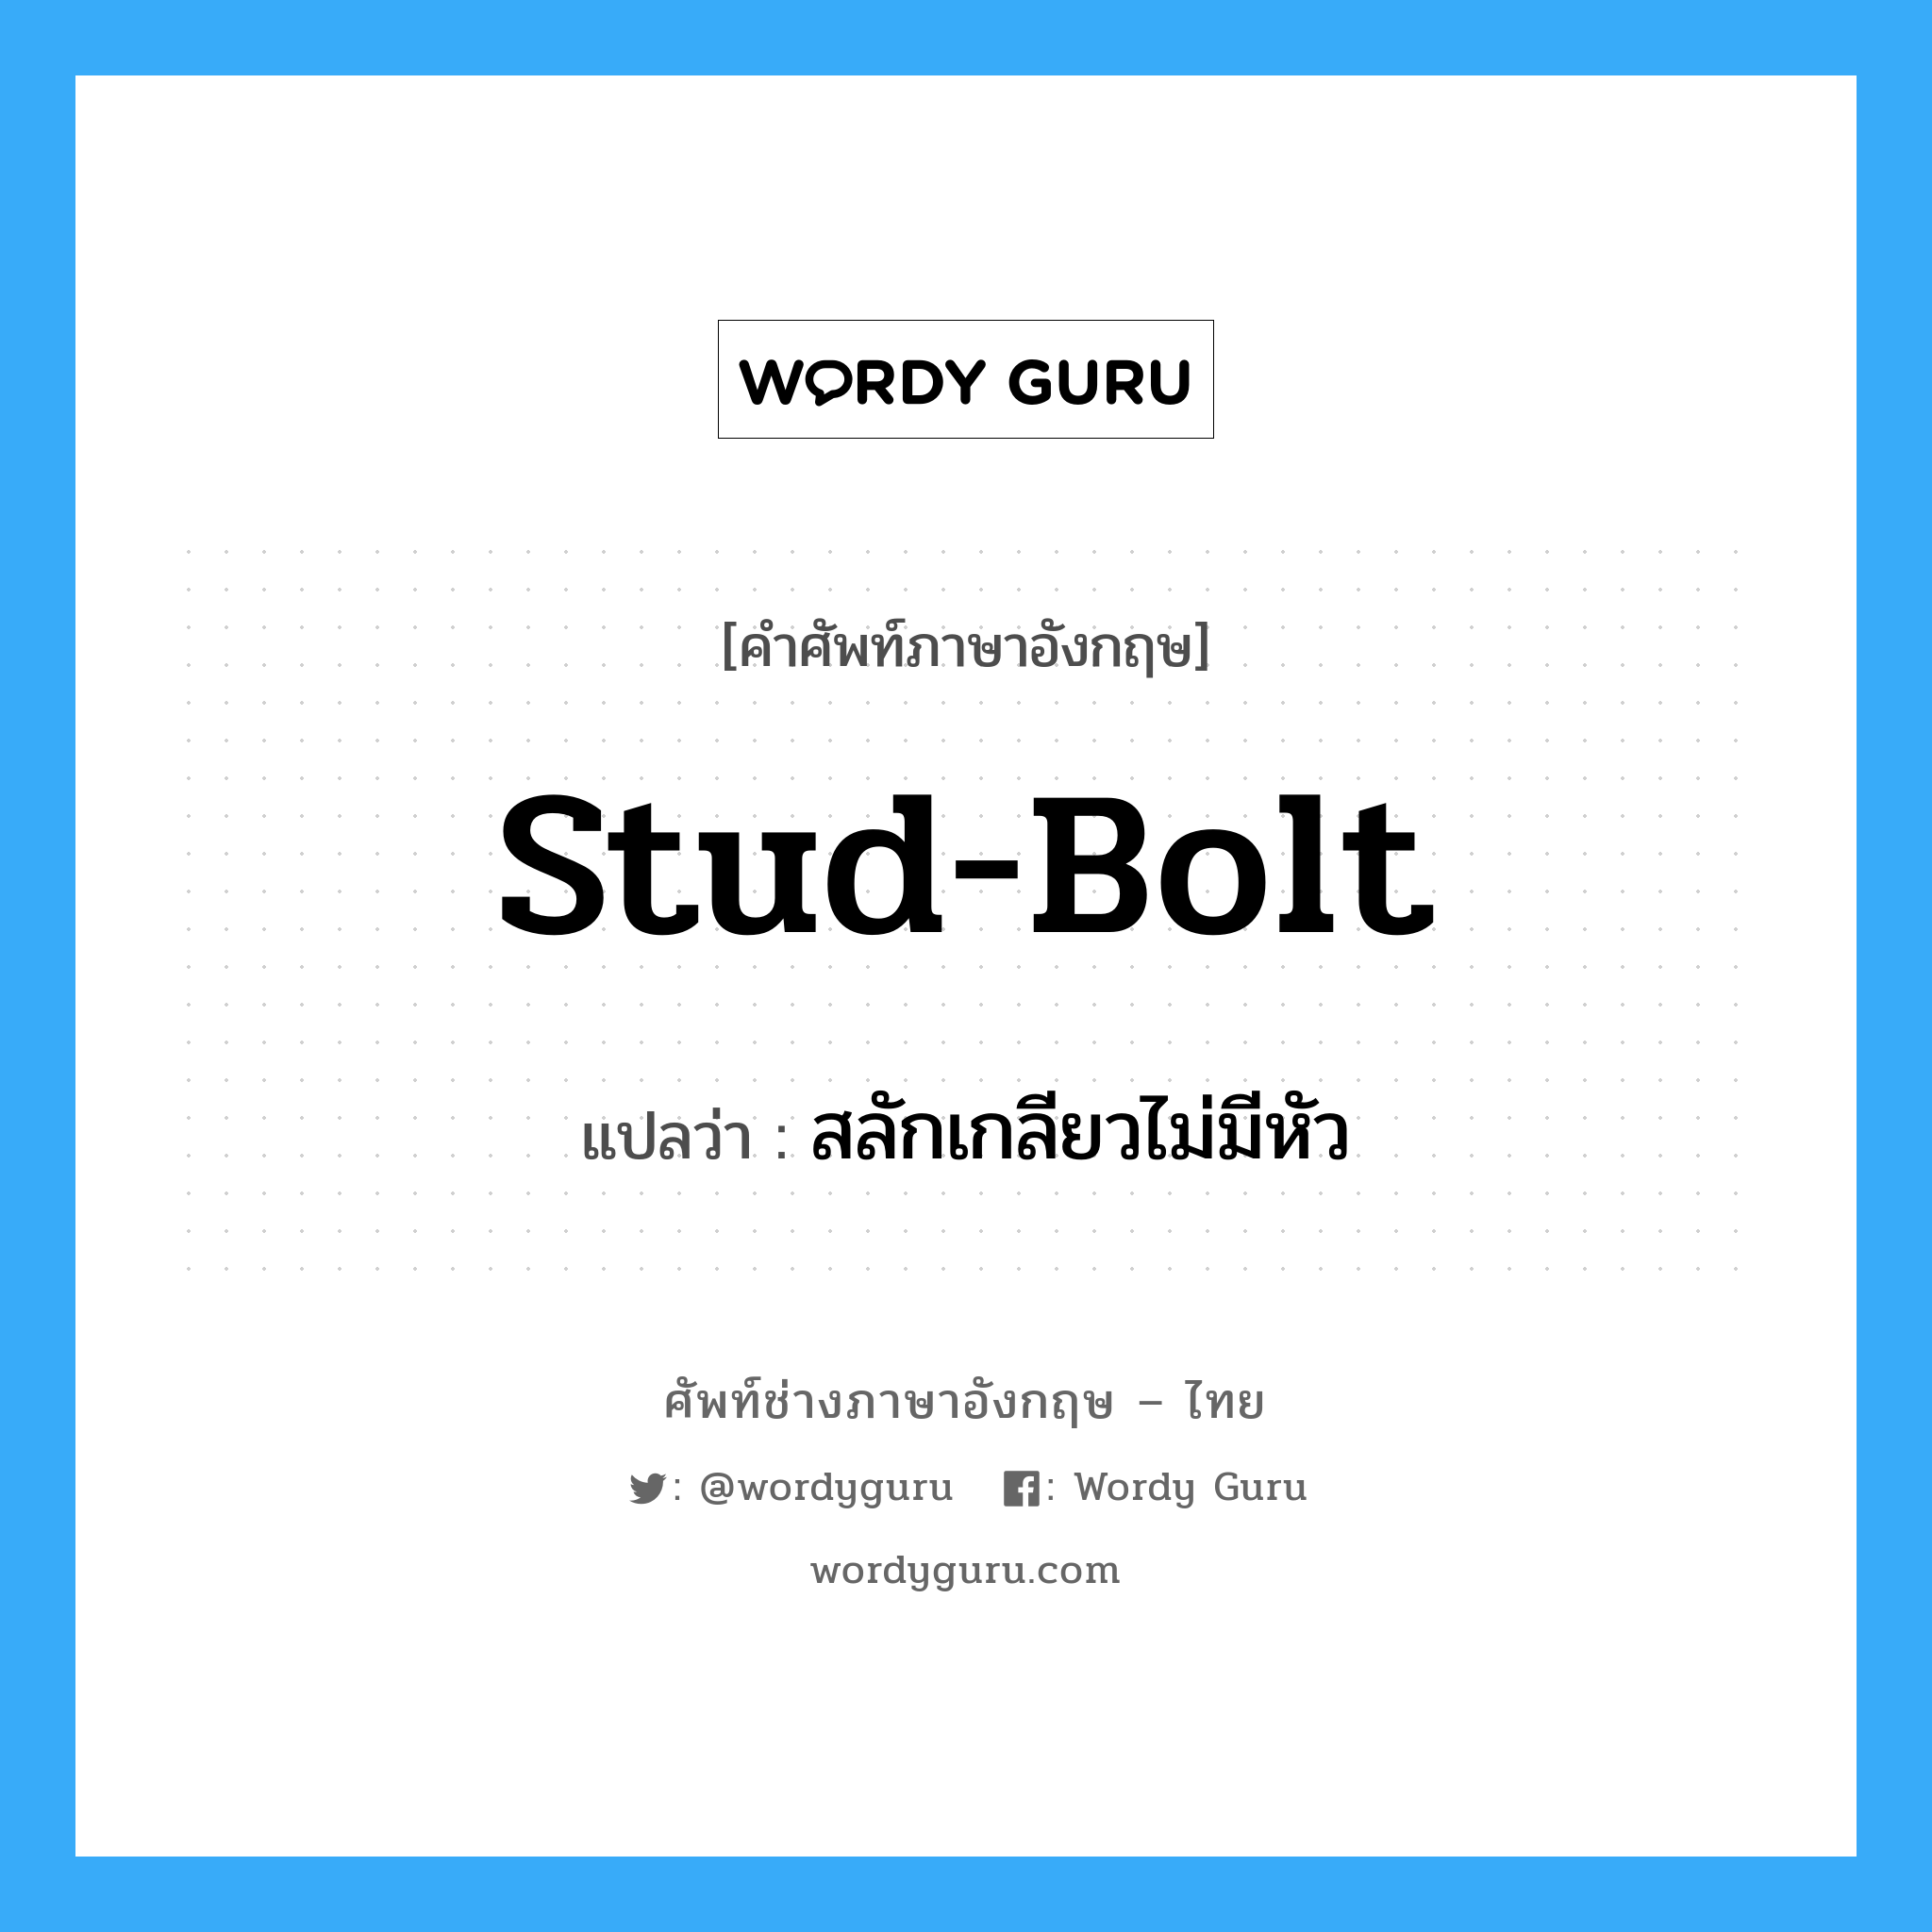 stud-bolt แปลว่า?, คำศัพท์ช่างภาษาอังกฤษ - ไทย stud-bolt คำศัพท์ภาษาอังกฤษ stud-bolt แปลว่า สลักเกลียวไม่มีหัว